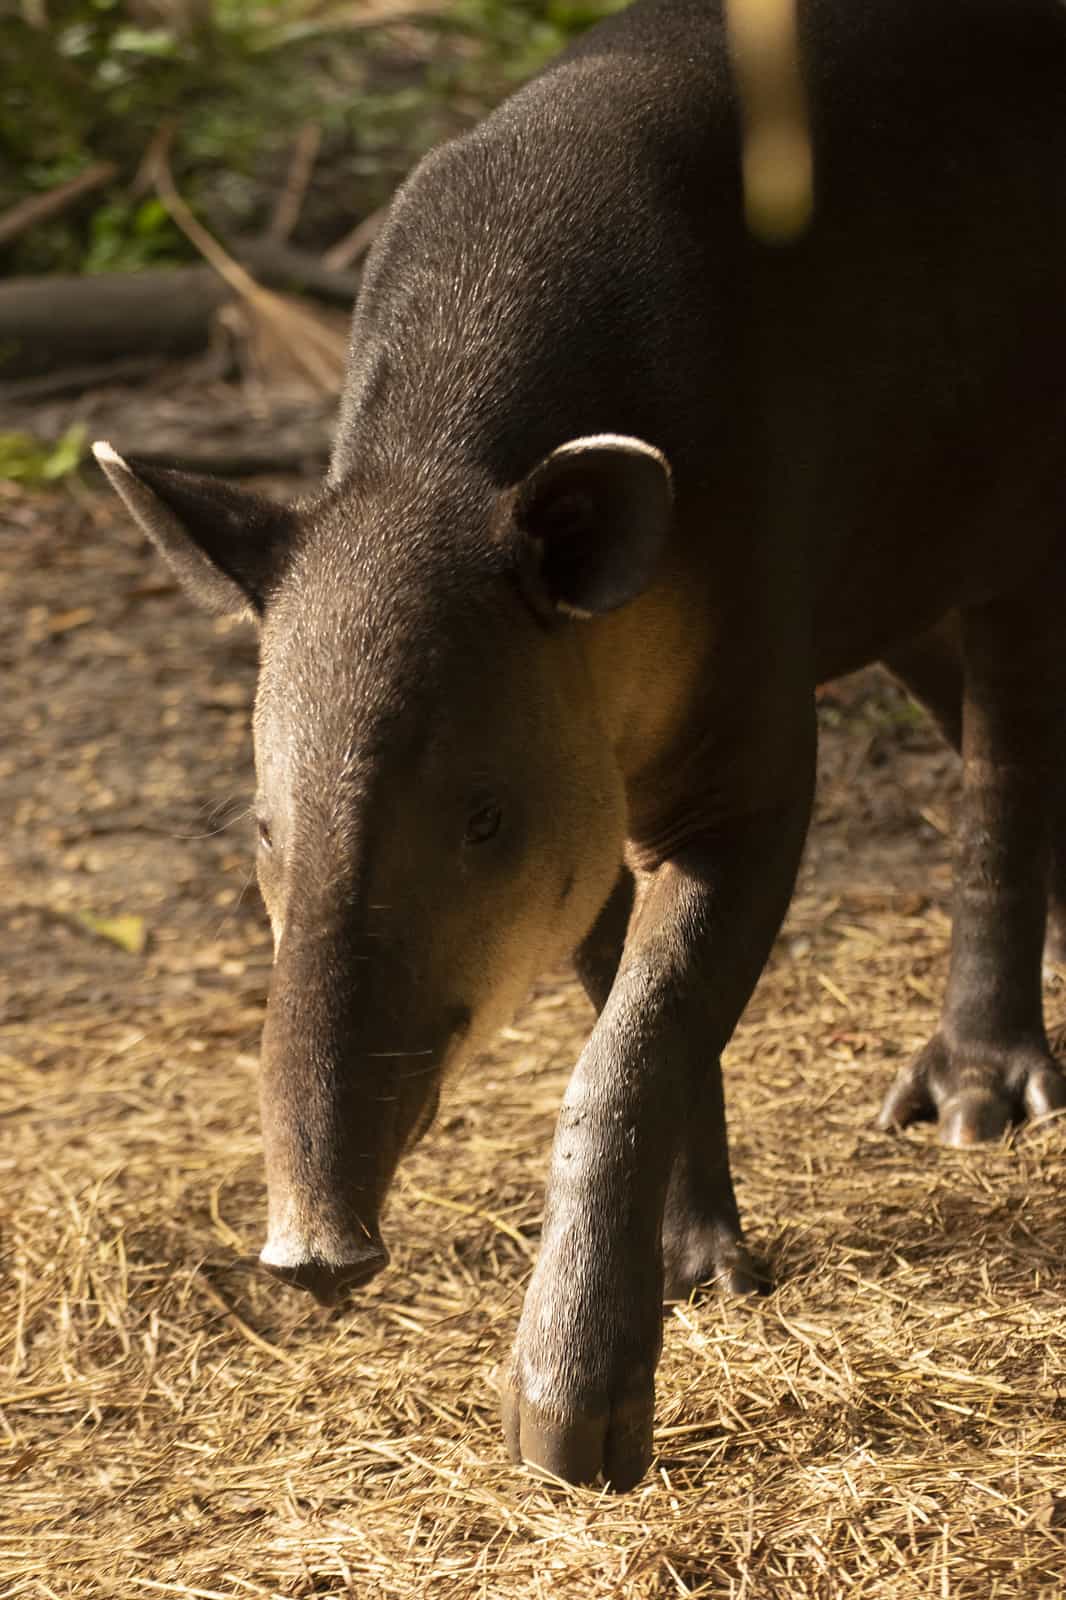 belize zoo tapir mountain cow walking